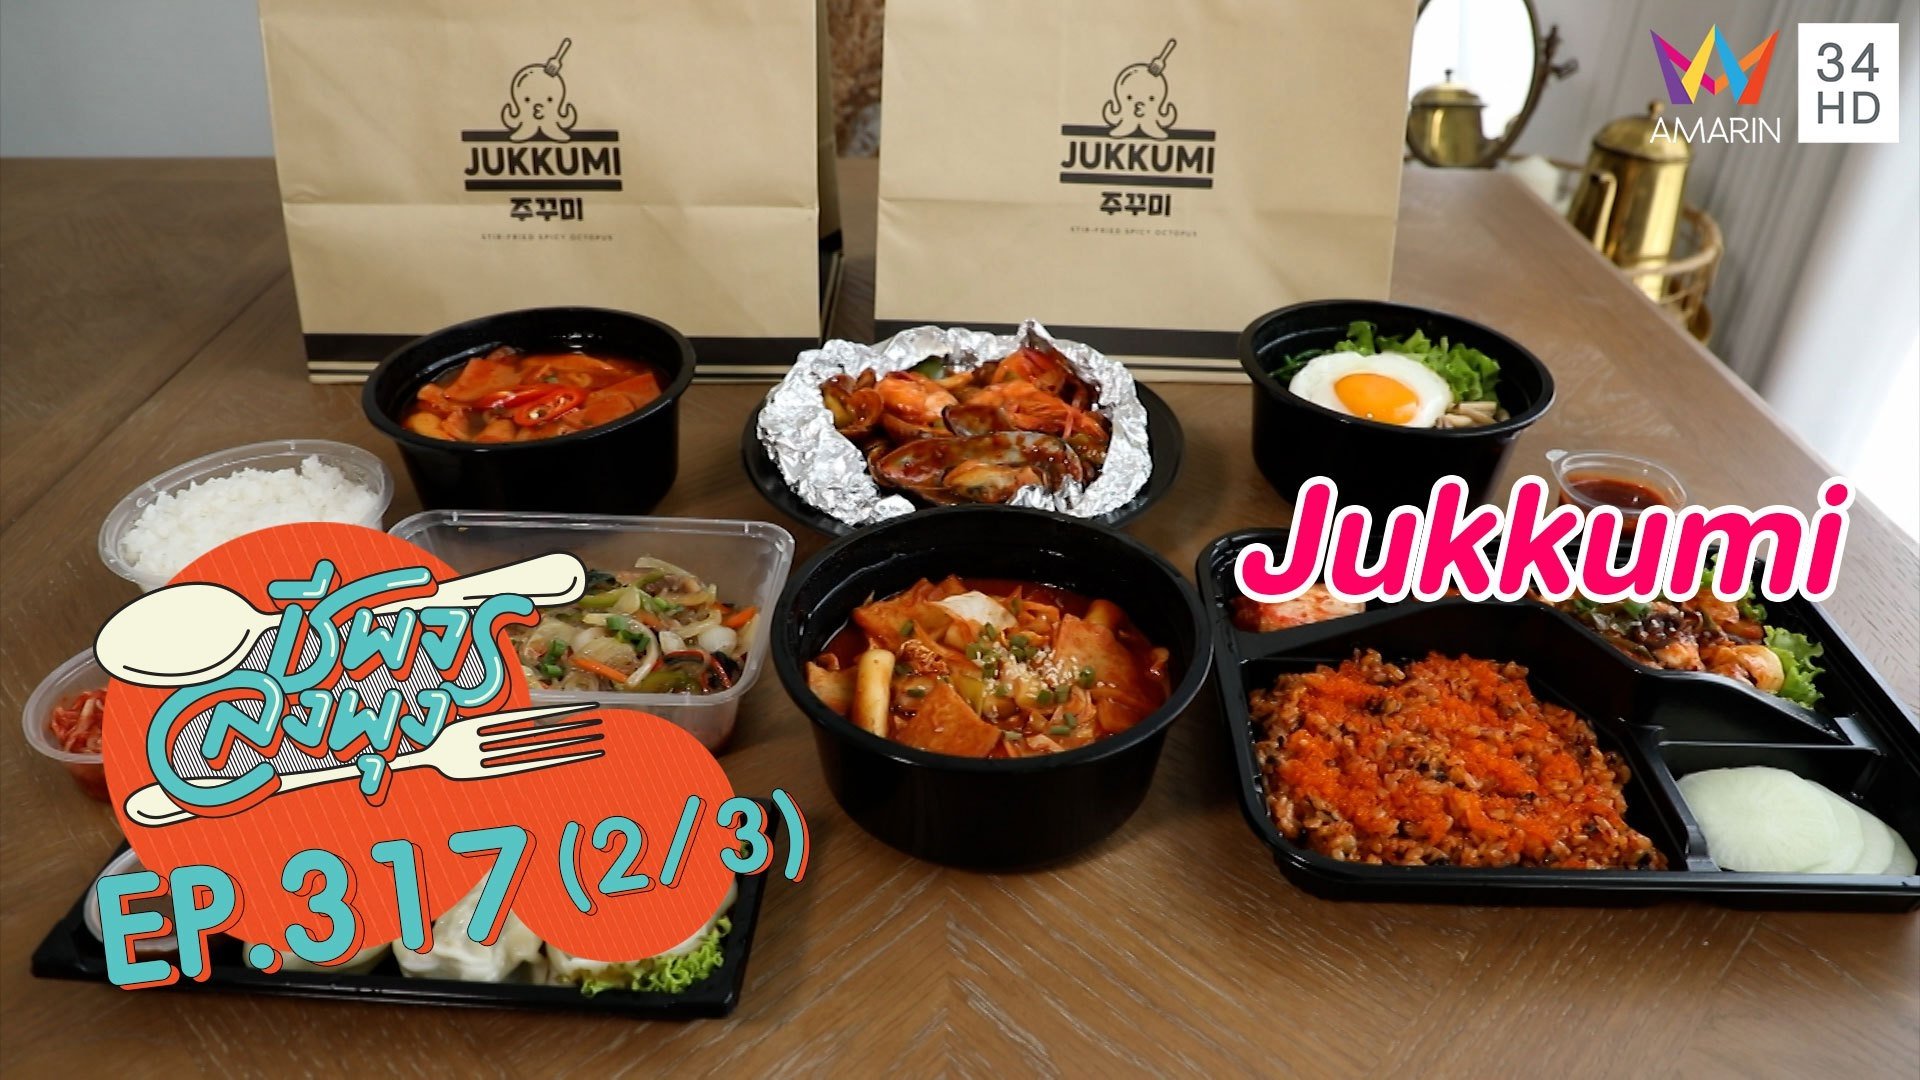 เอาใจคออาหารเกาหลี @ ร้าน Jukkumi | ชีพจรลงพุง | 21 ส.ค. 64 (2/3) | AMARIN TVHD34